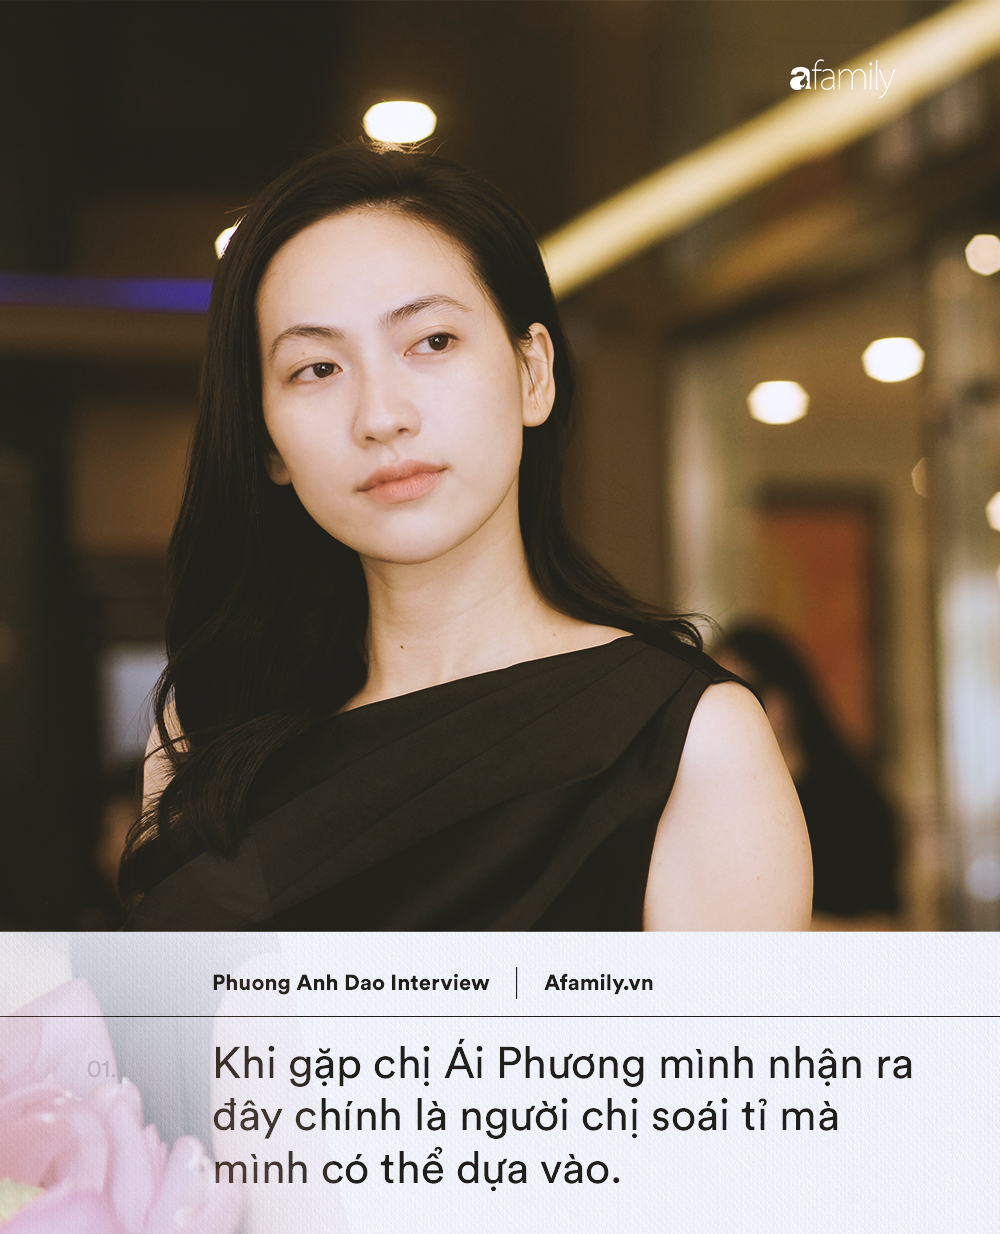 "Ngọc nữ mới của showbiz Việt" Phương Anh Đào: 18 tuổi đã muốn lấy chồng, khuyên phụ nữ đừng làm đẹp để phục vụ đàn ông - Ảnh 6.